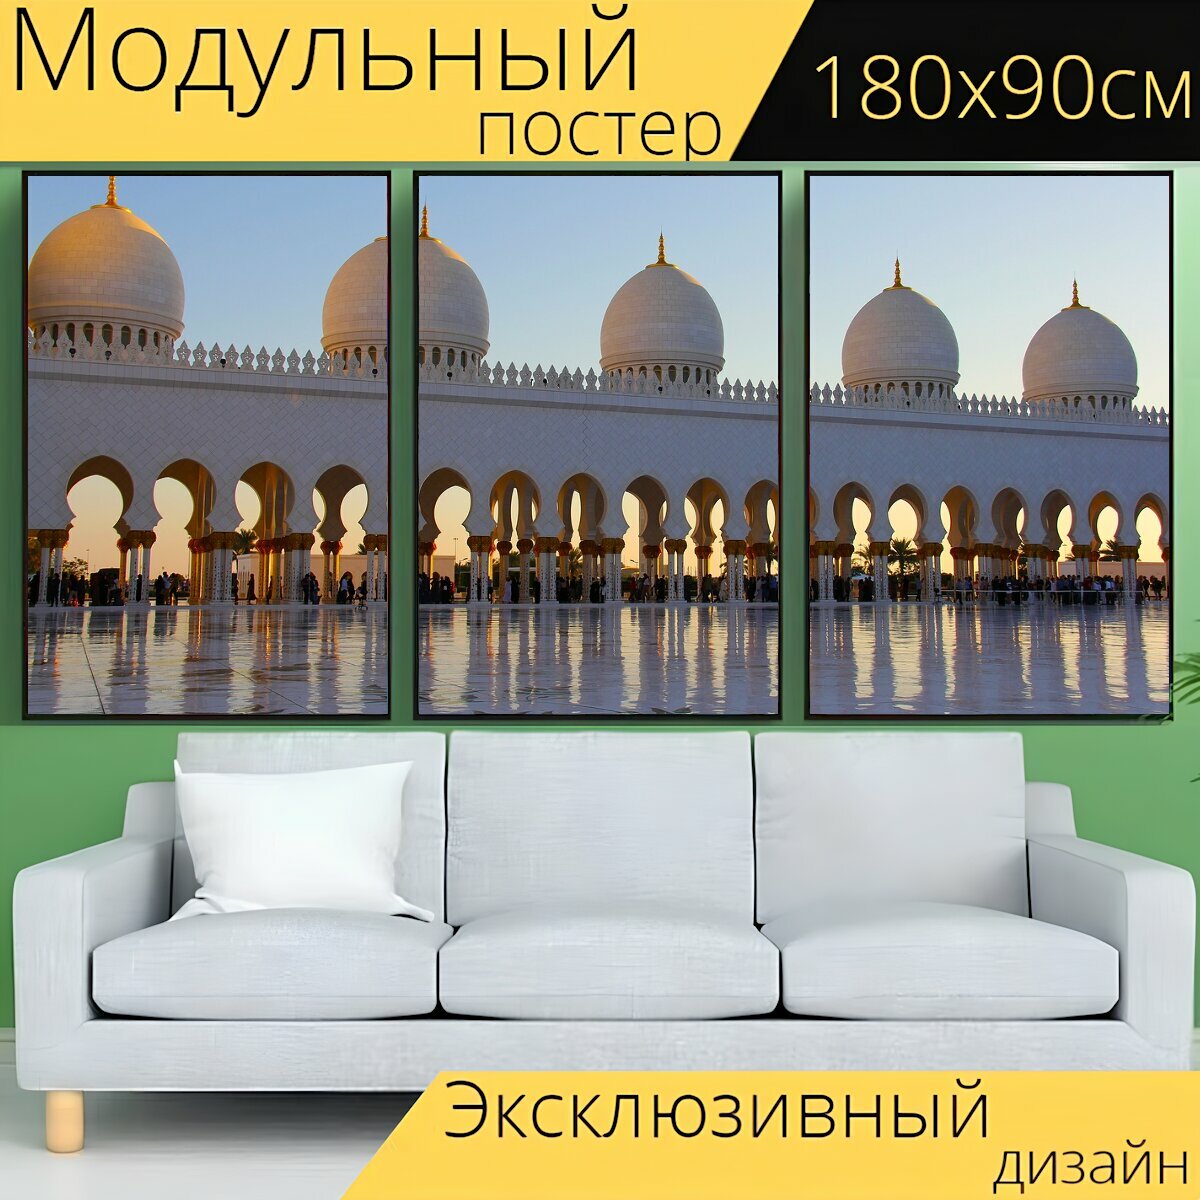 Модульный постер "Молиться, мусульманин, большая мечеть шейха зайда" 180 x 90 см. для интерьера